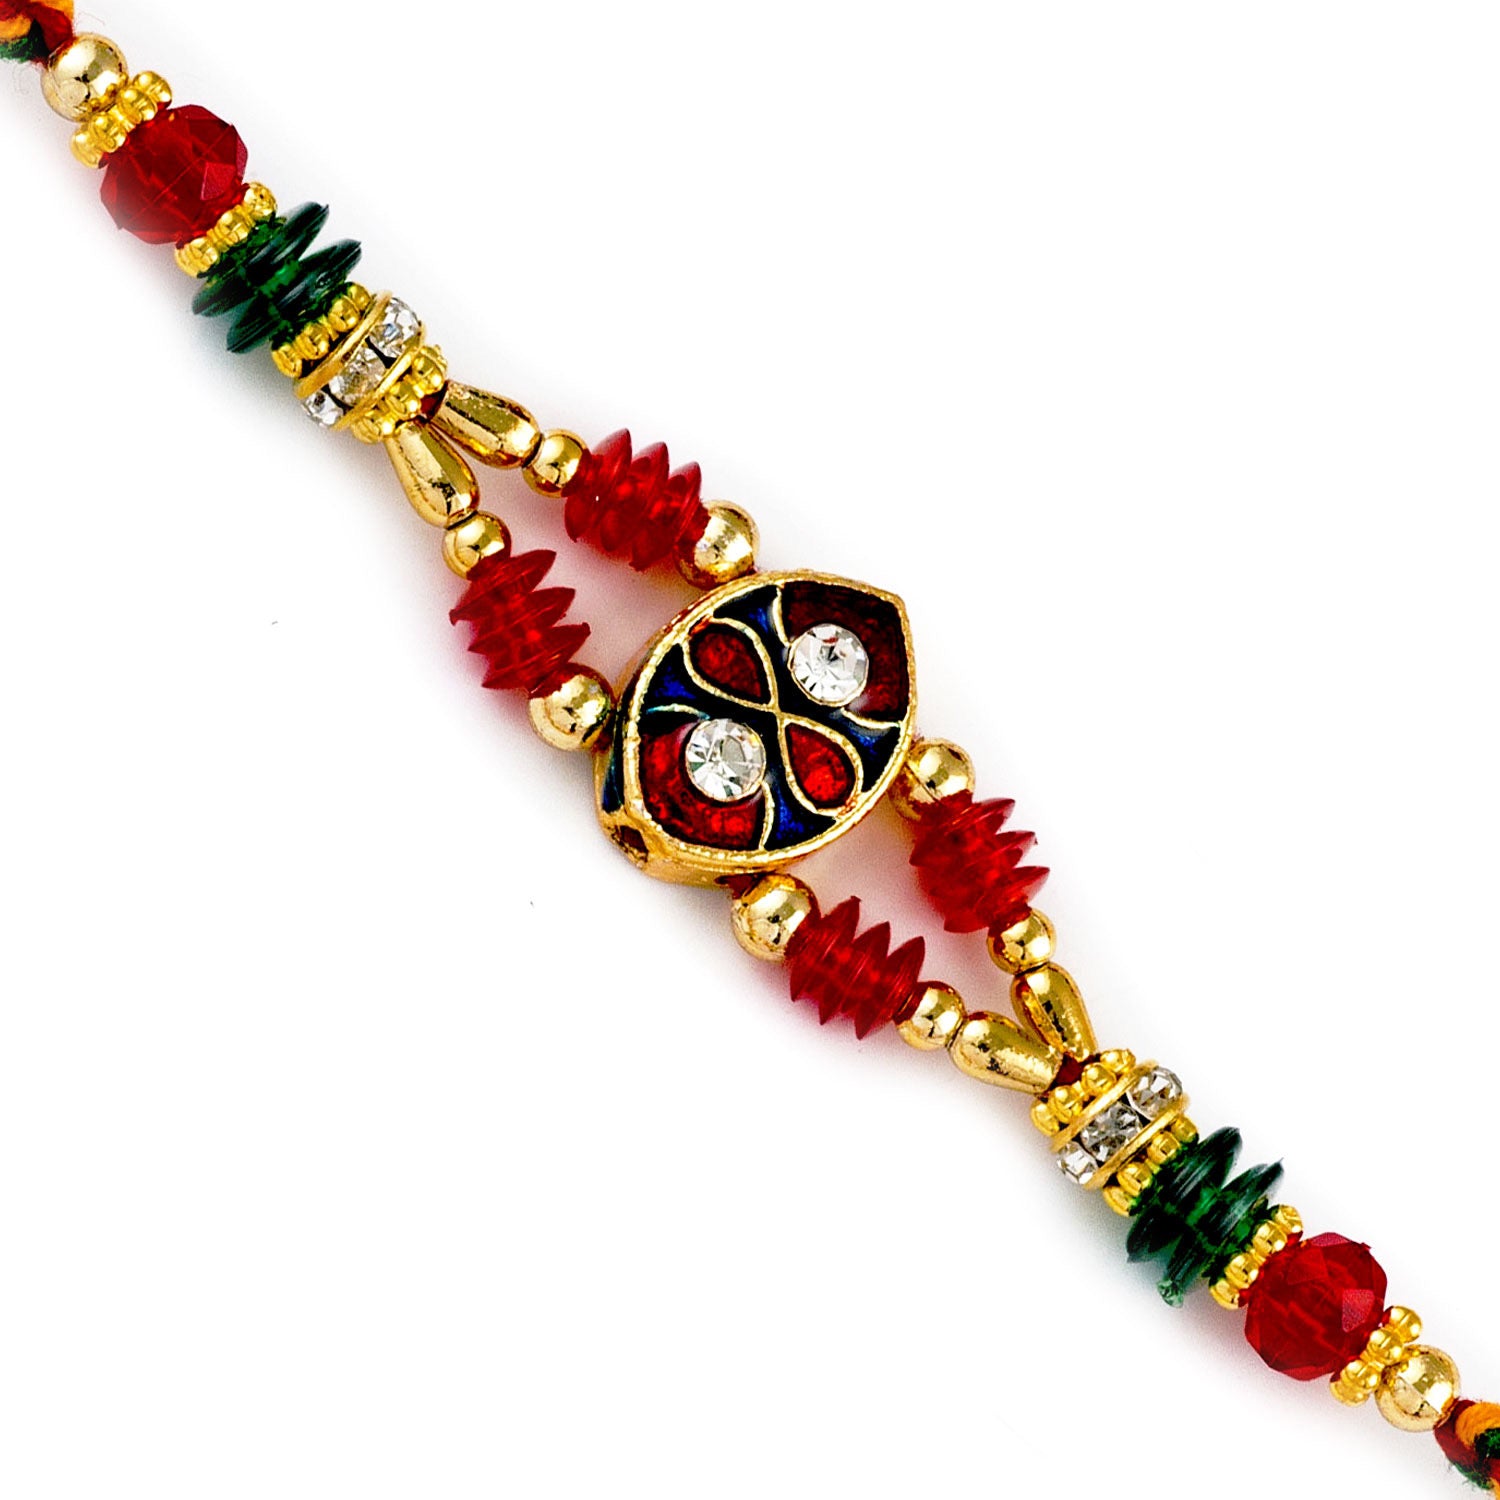 Aapno Rajasthan Crystal Beads Studded Meenakari Work Rakhi - Default Title (RJ17405)